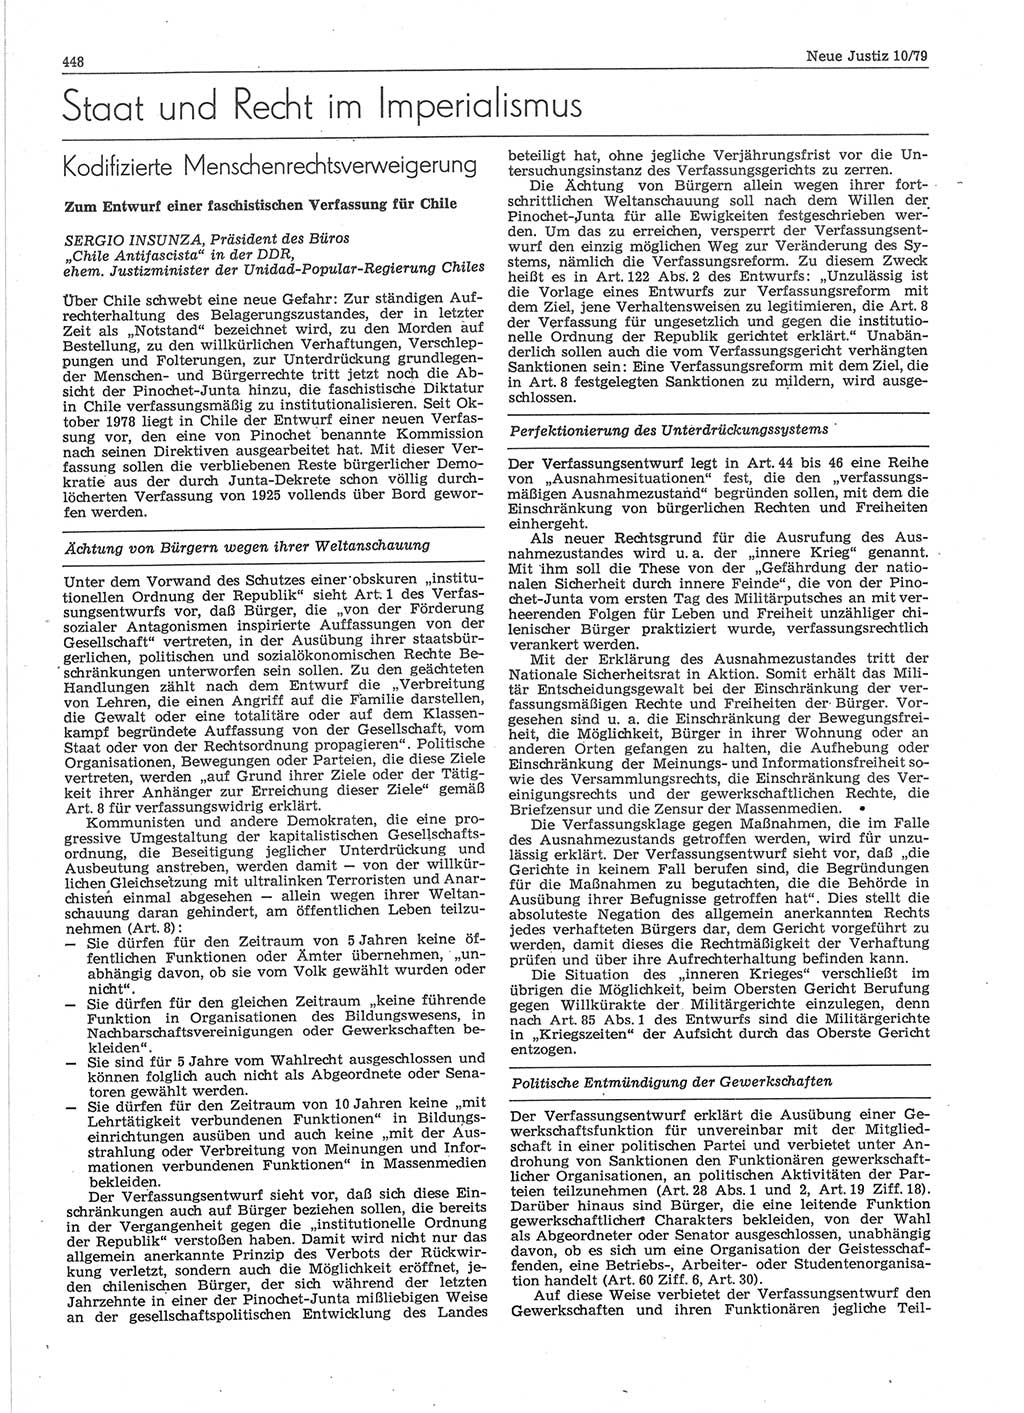 Neue Justiz (NJ), Zeitschrift für sozialistisches Recht und Gesetzlichkeit [Deutsche Demokratische Republik (DDR)], 33. Jahrgang 1979, Seite 448 (NJ DDR 1979, S. 448)